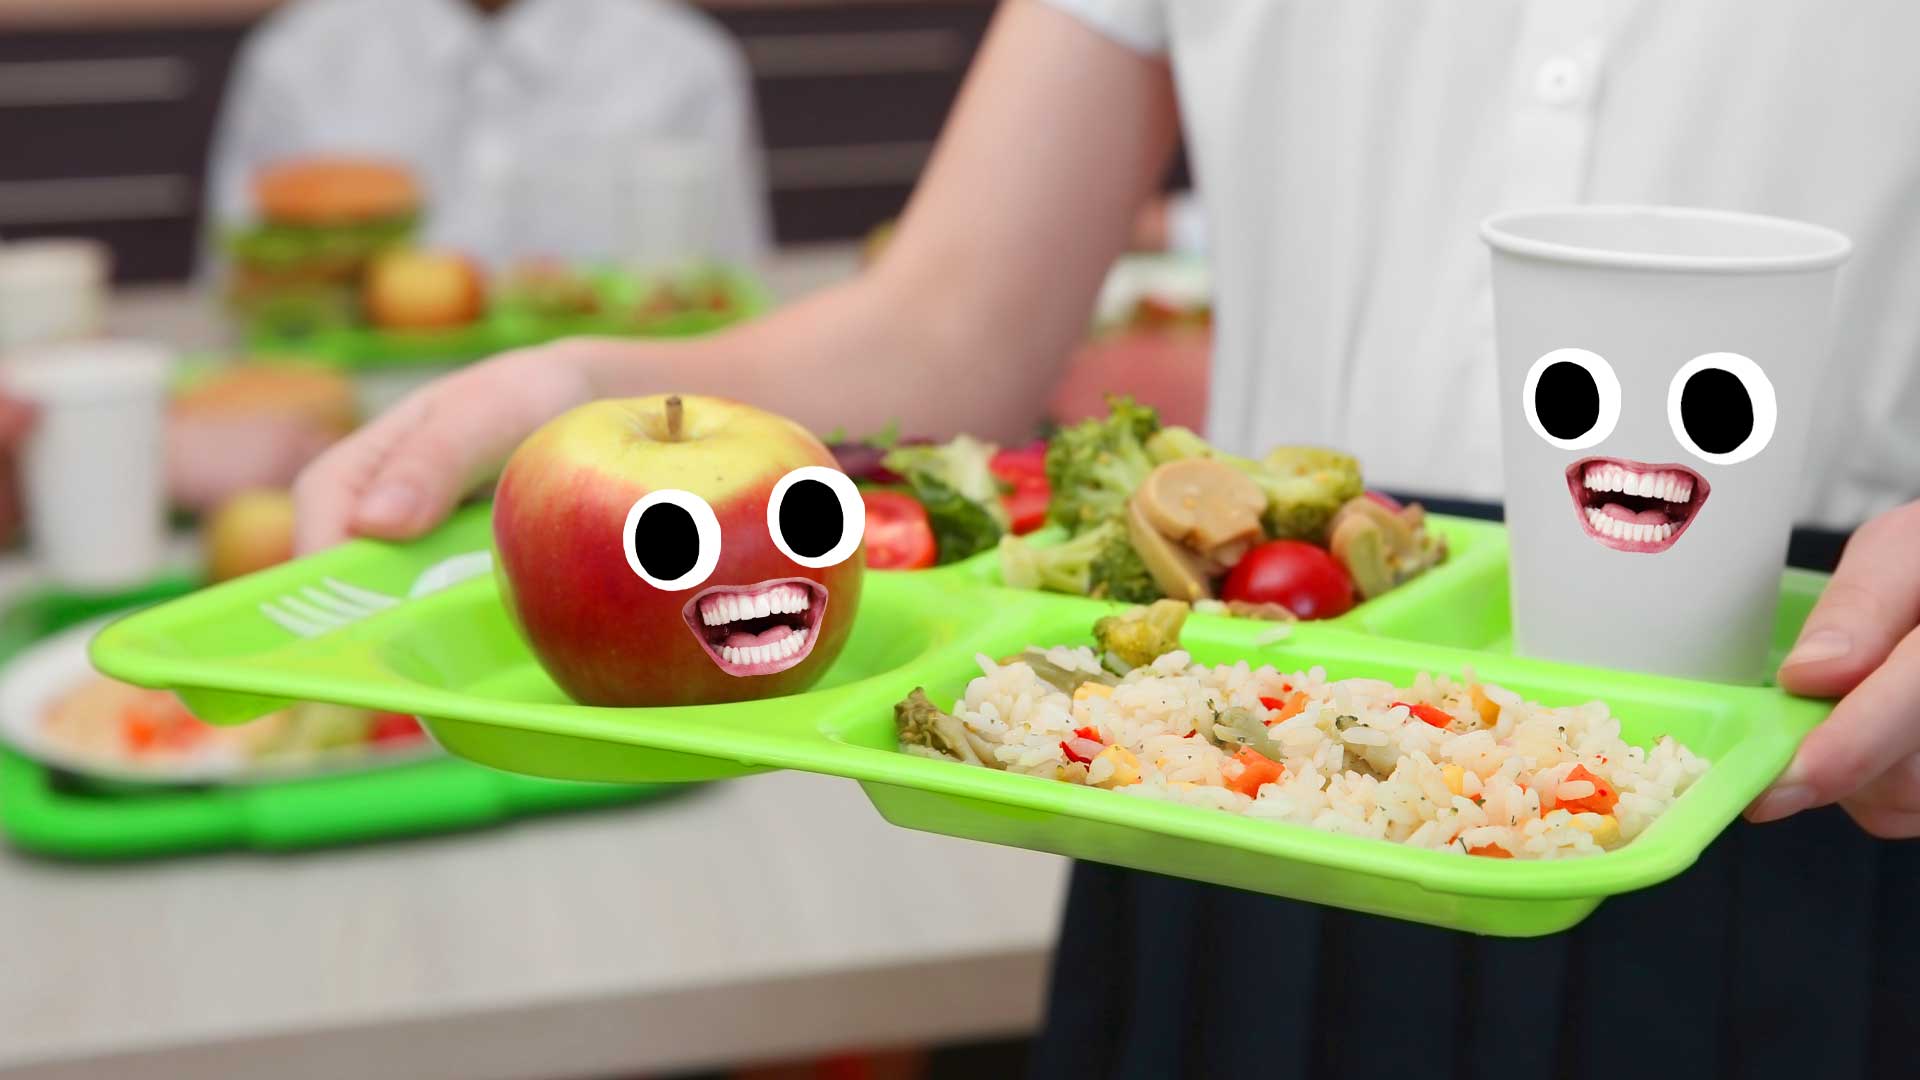 A delicious school lunch